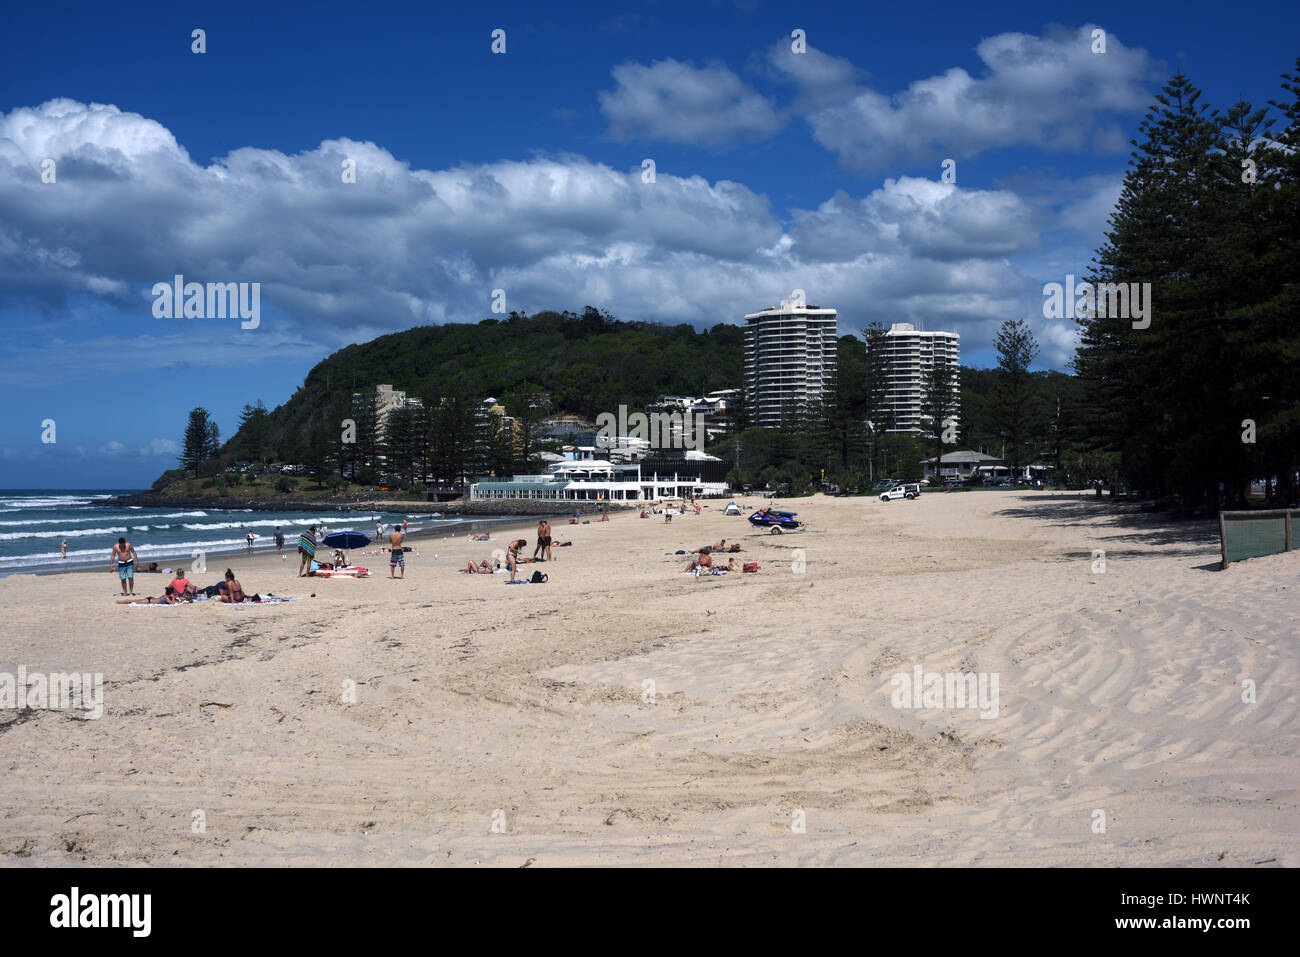 Les vacanciers sur la plage de Burleigh Heads, partie de la Côte d'or de l'Australie. Banque D'Images